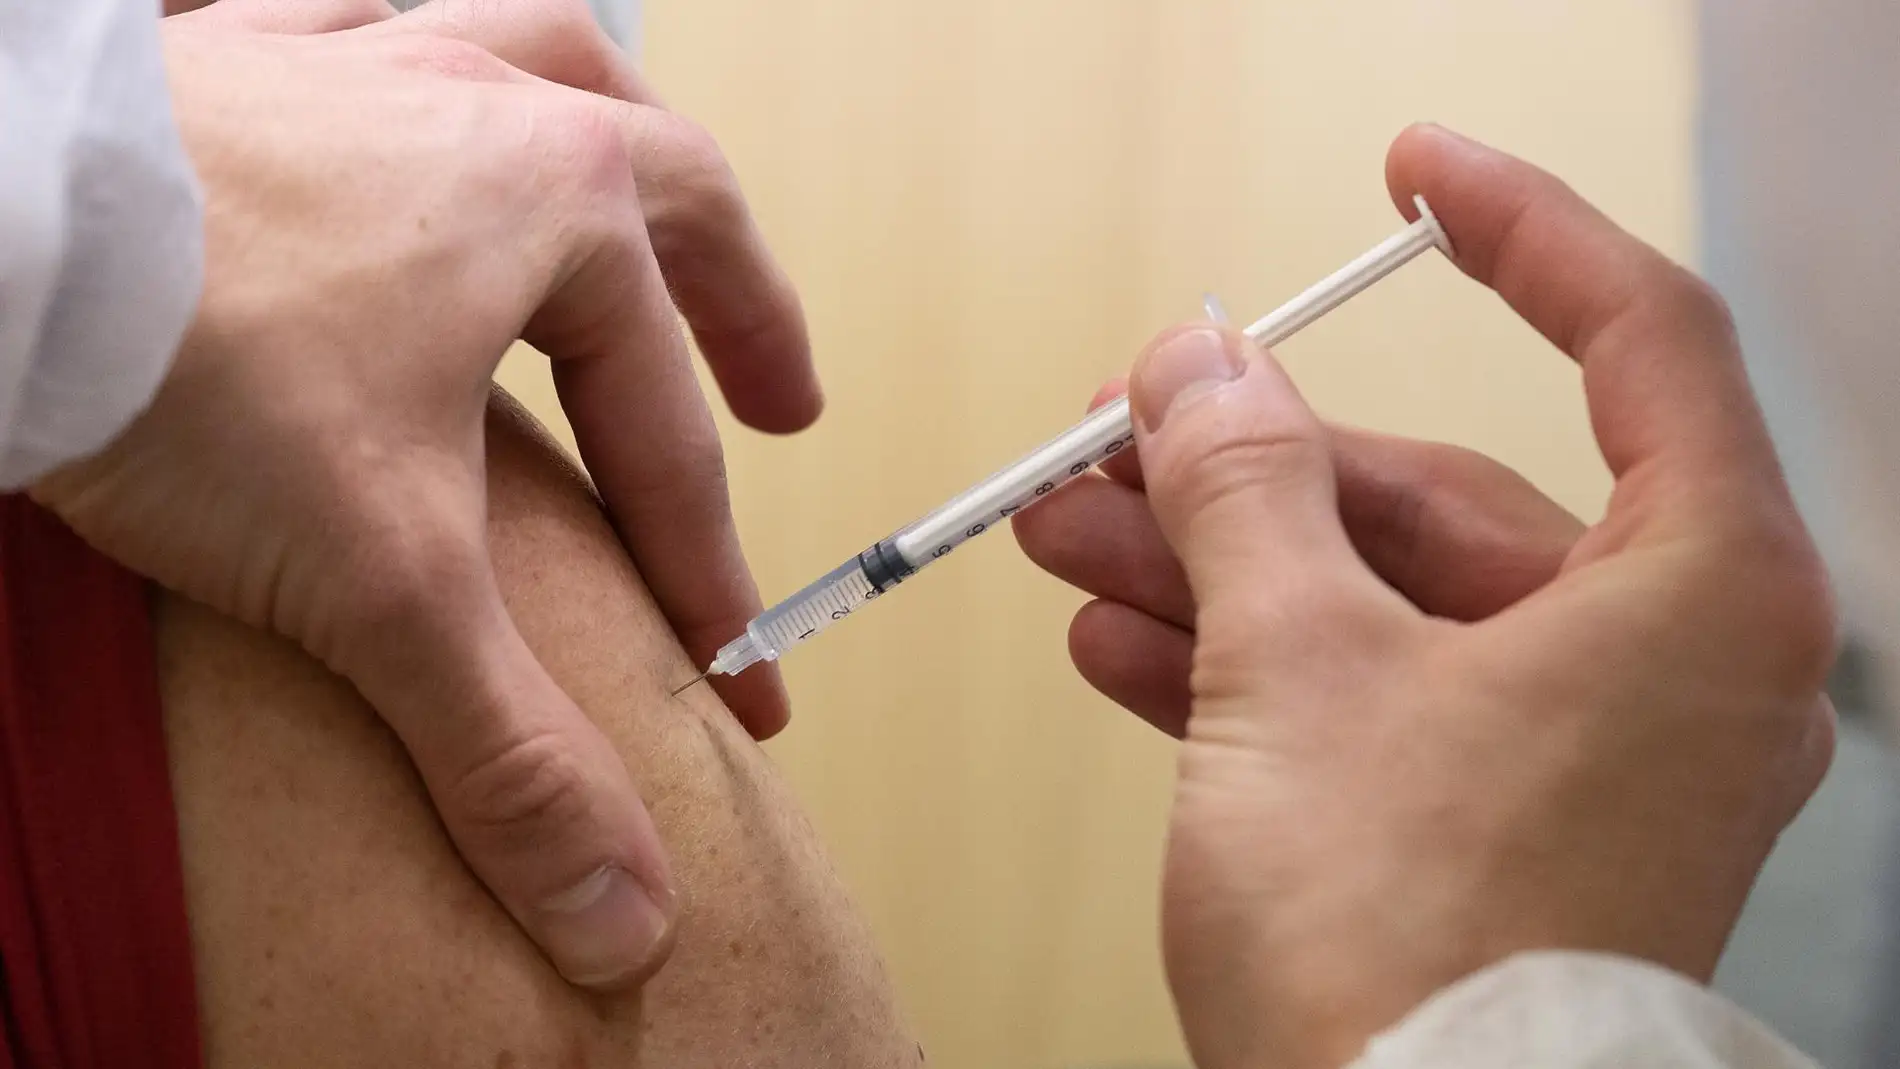 Un estudio detalla qué implica tener efectos secundarios con la vacuna de la Covid